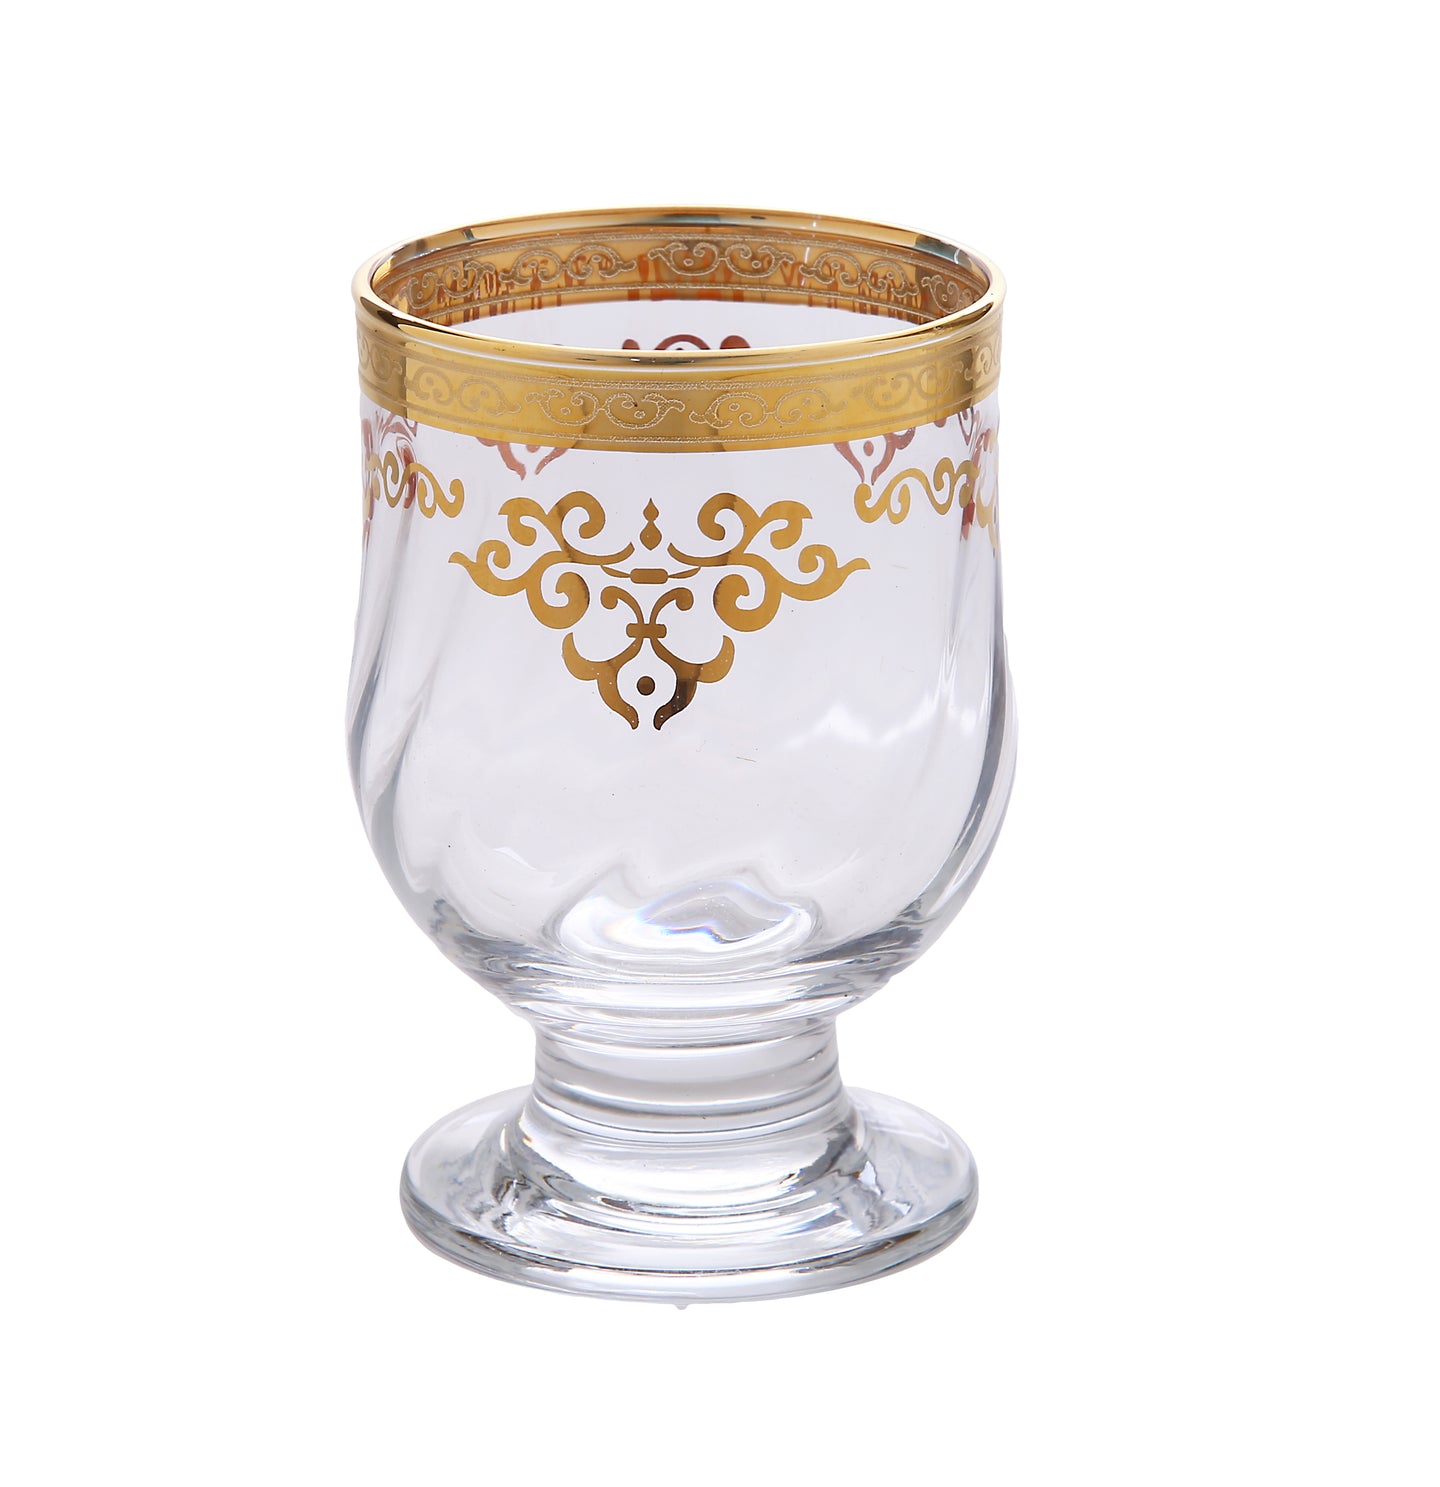 Set of 6 Short Stem Glasses with Rich Gold Design